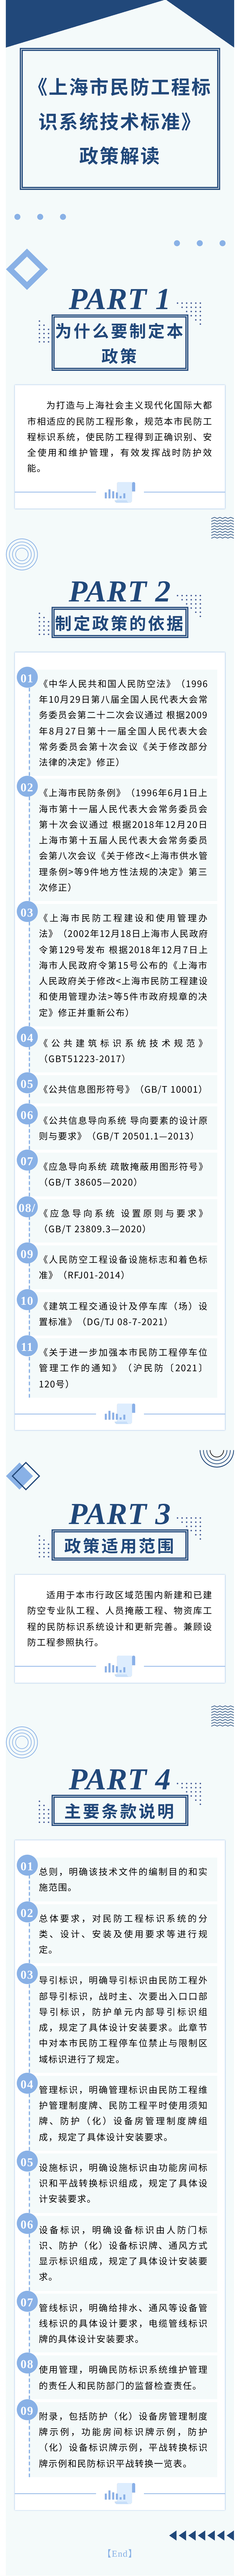 上海市民防工程标识系统技术标准（政策解读）.png